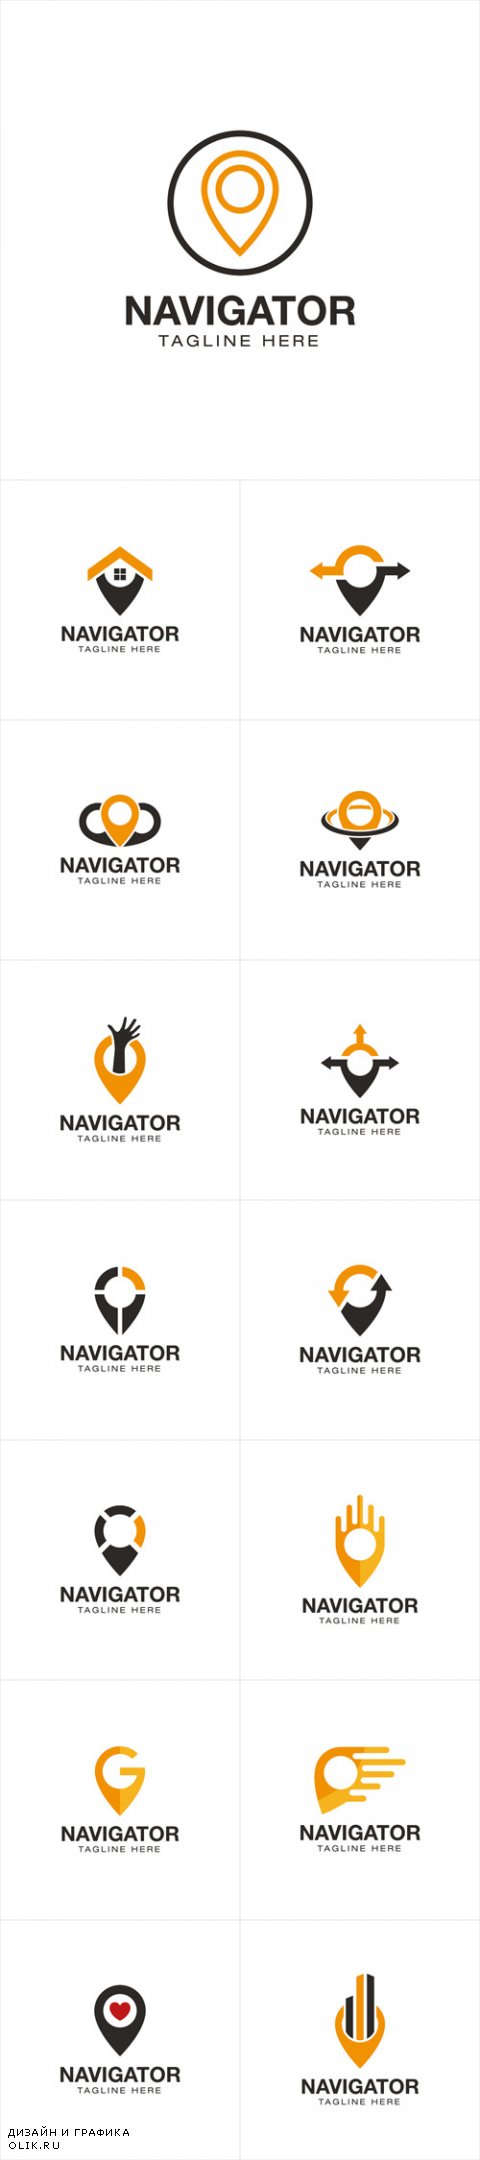 Vector Point Navigation Logo Design